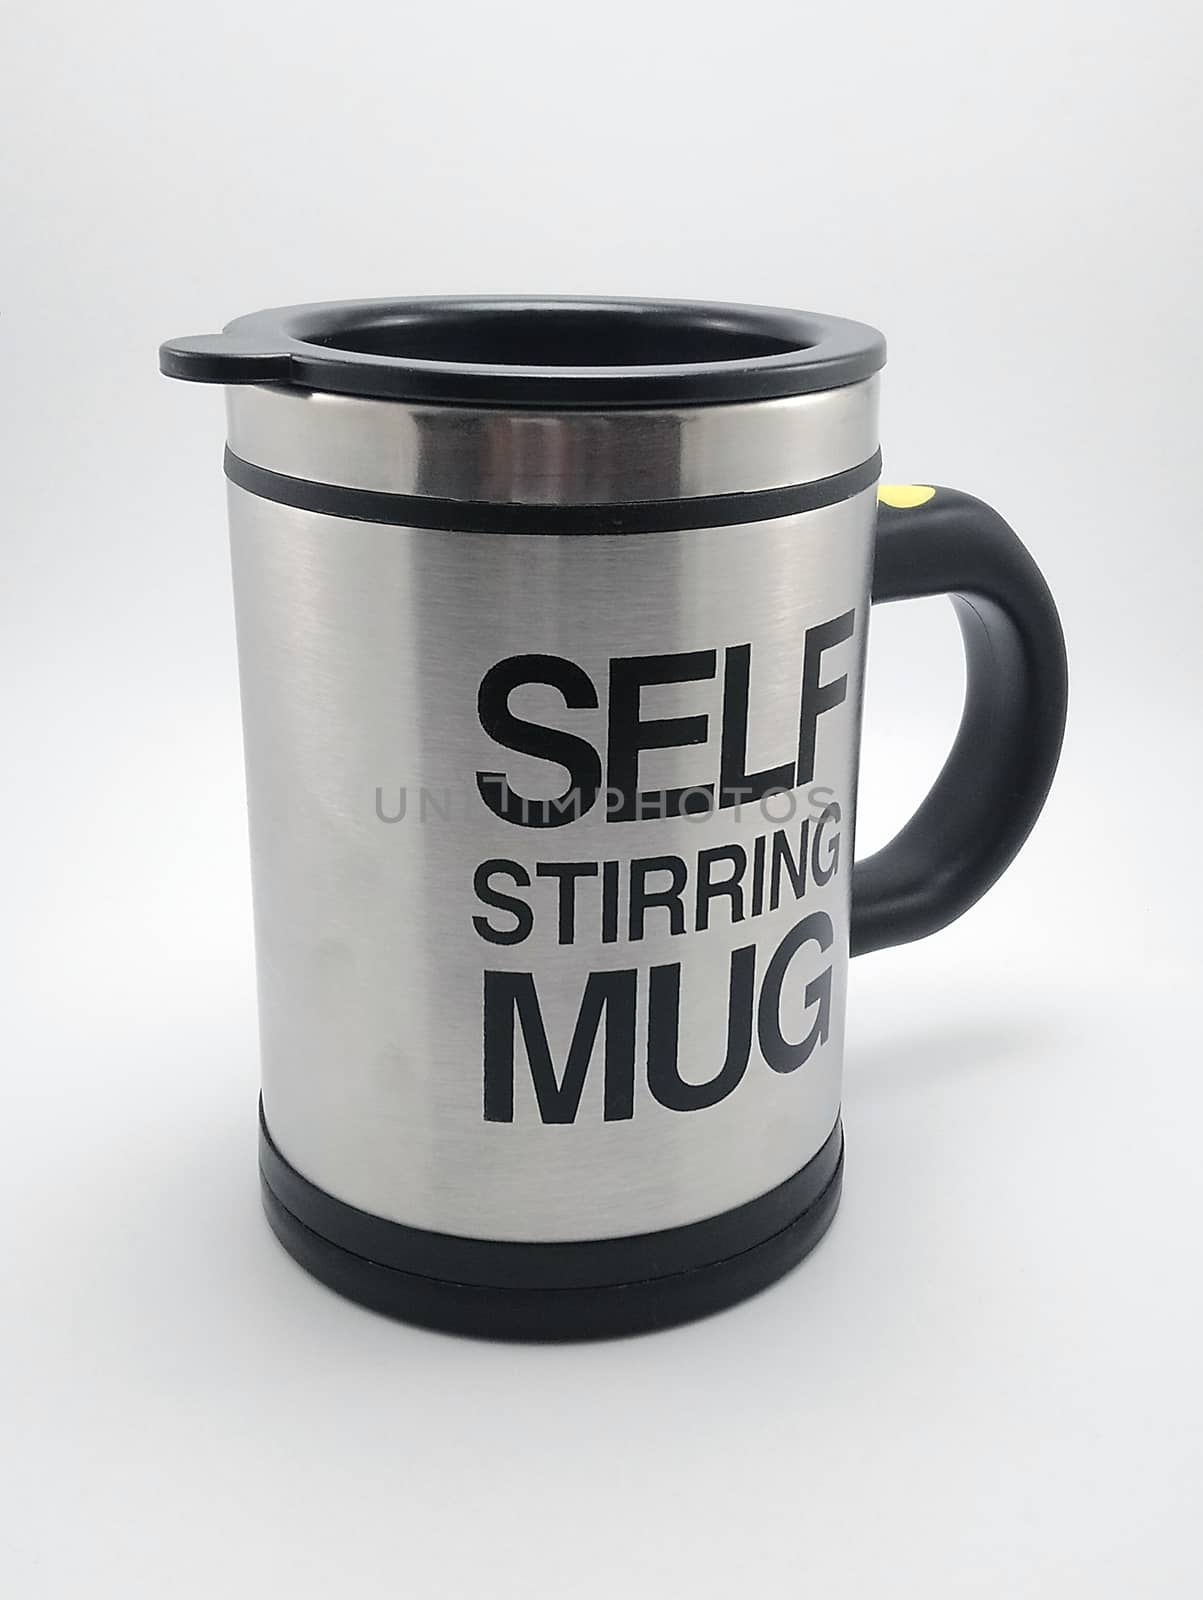 Self stirring mug in Manila, Philippines by imwaltersy